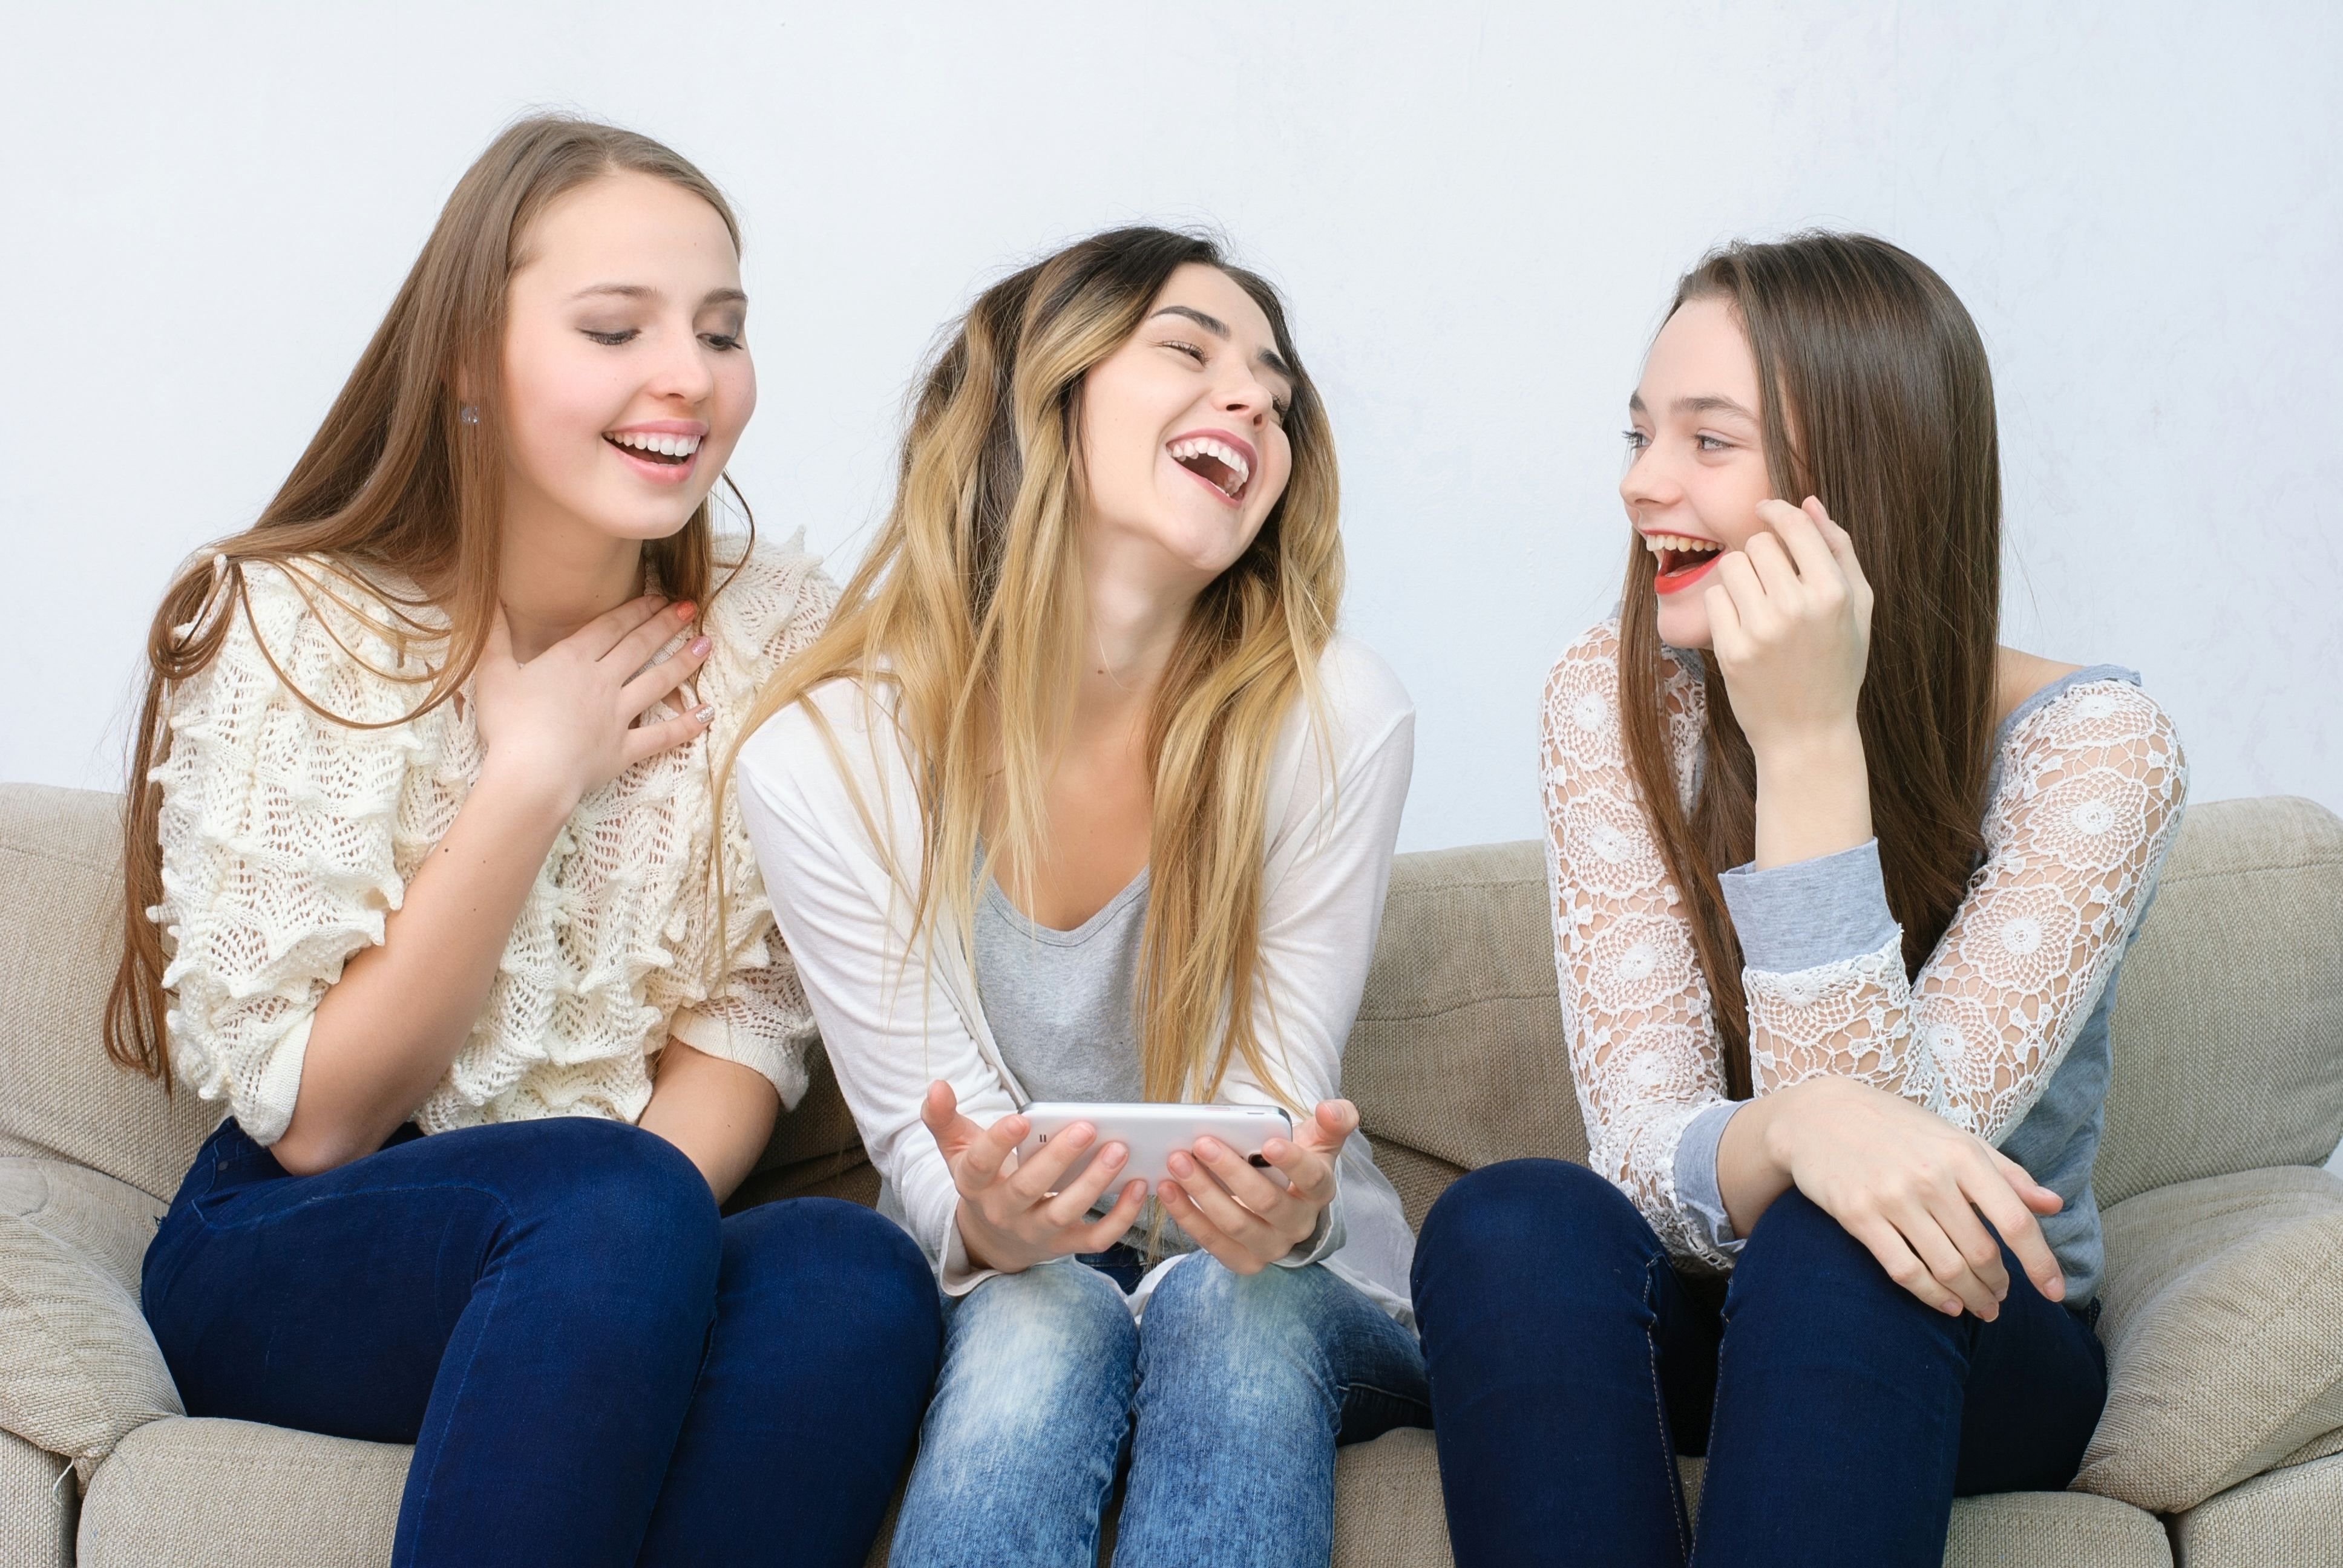 Three teenage girls laughing | Source: Shutterstock